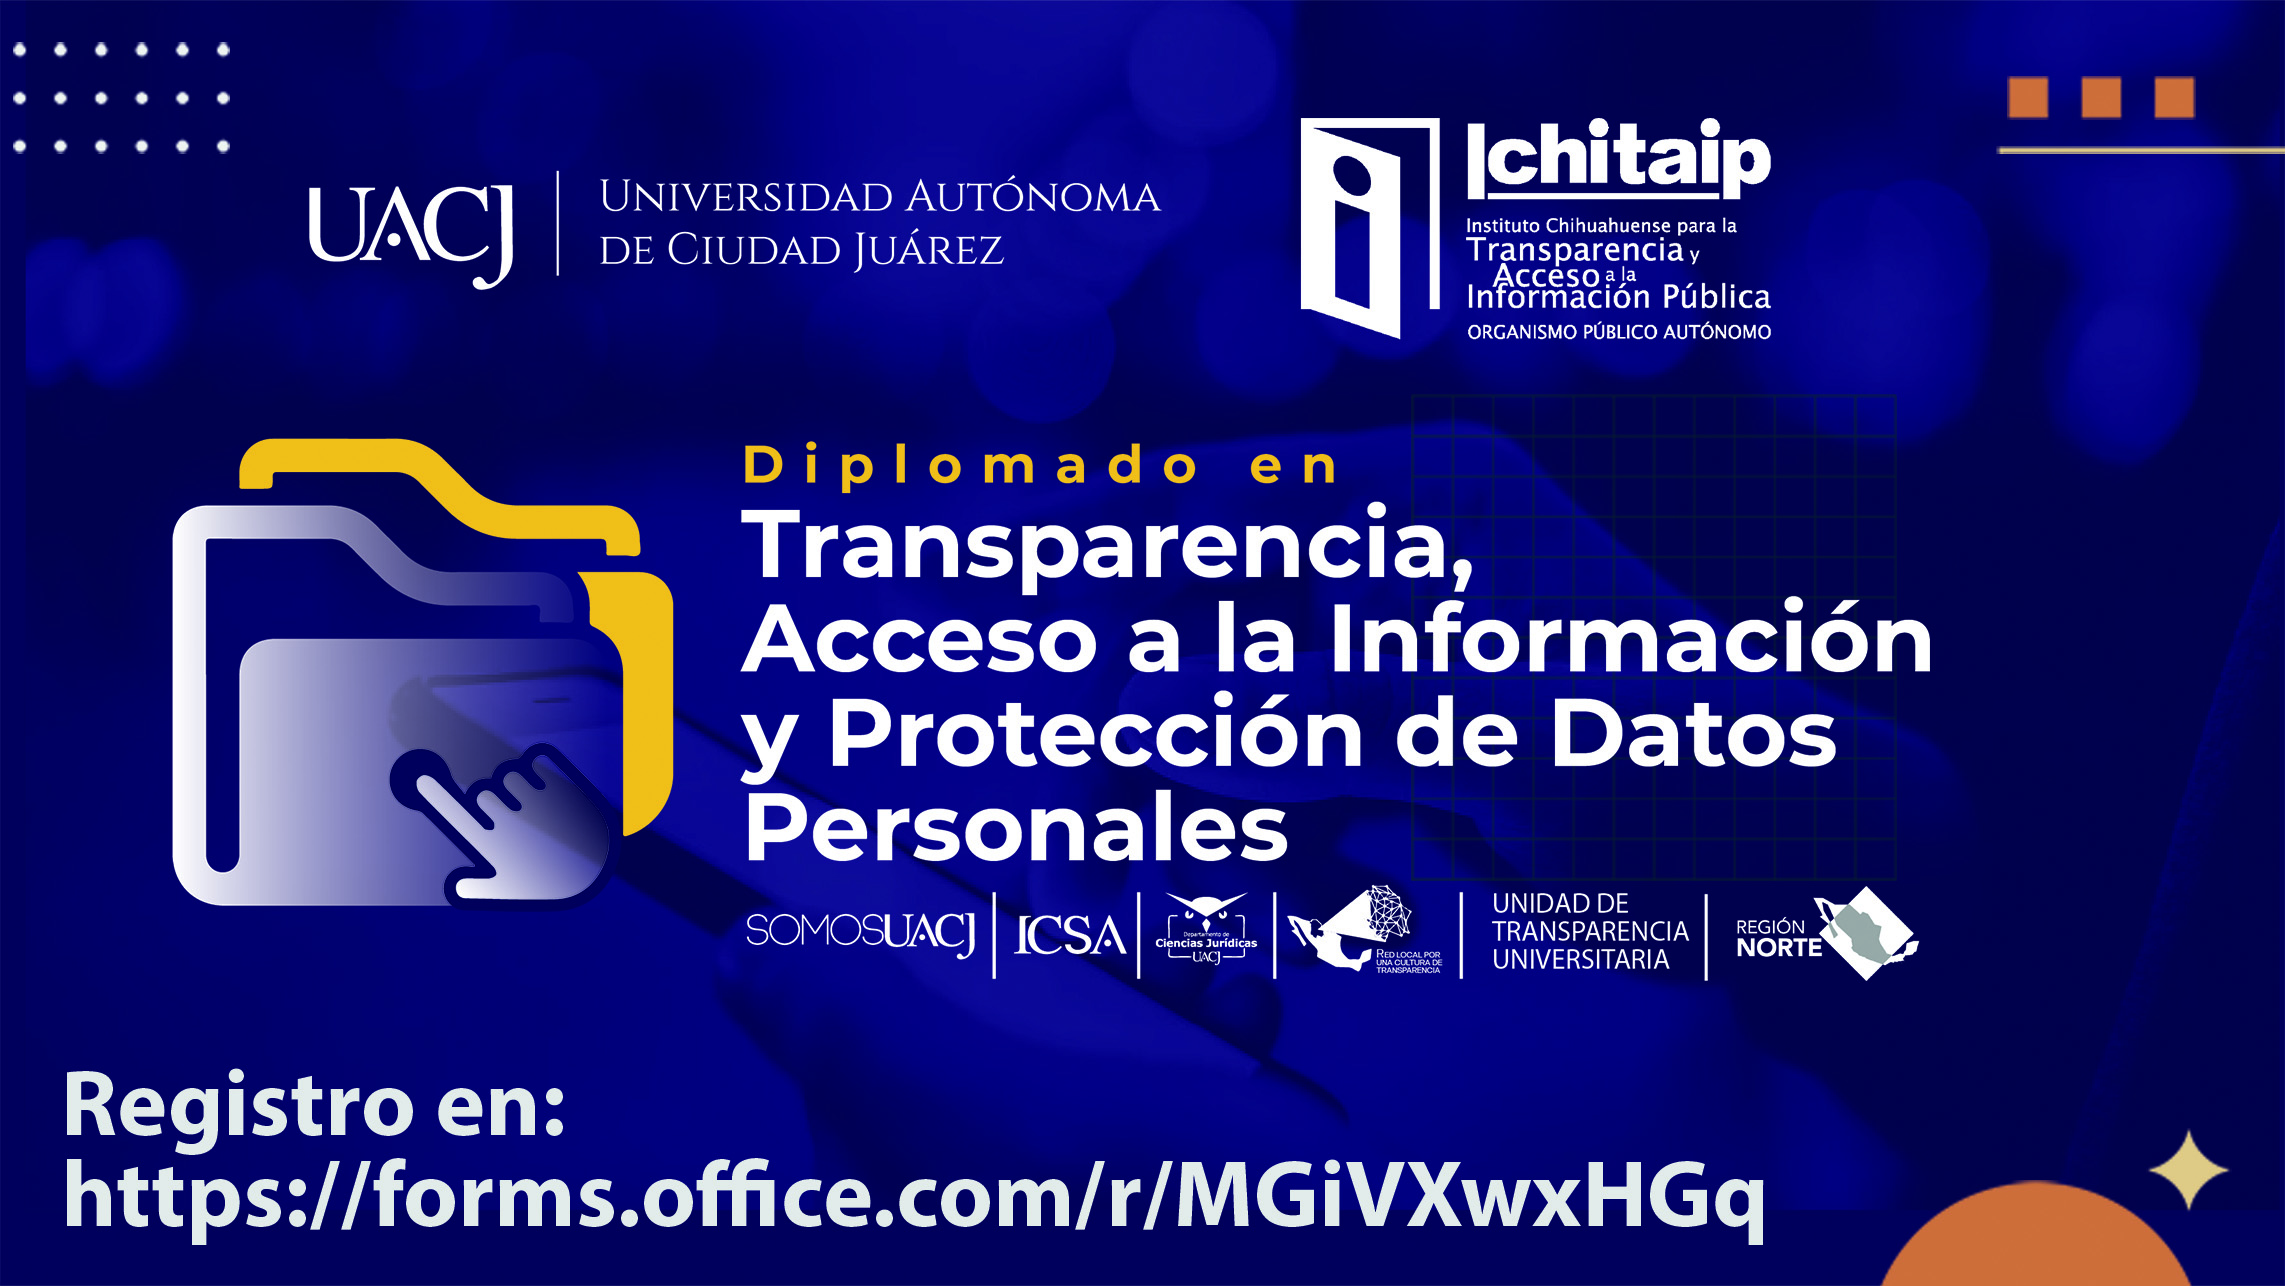 Diplomado en Transparencia, Acceso a la Información y Protección de Datos  Personales – ICHITAIP